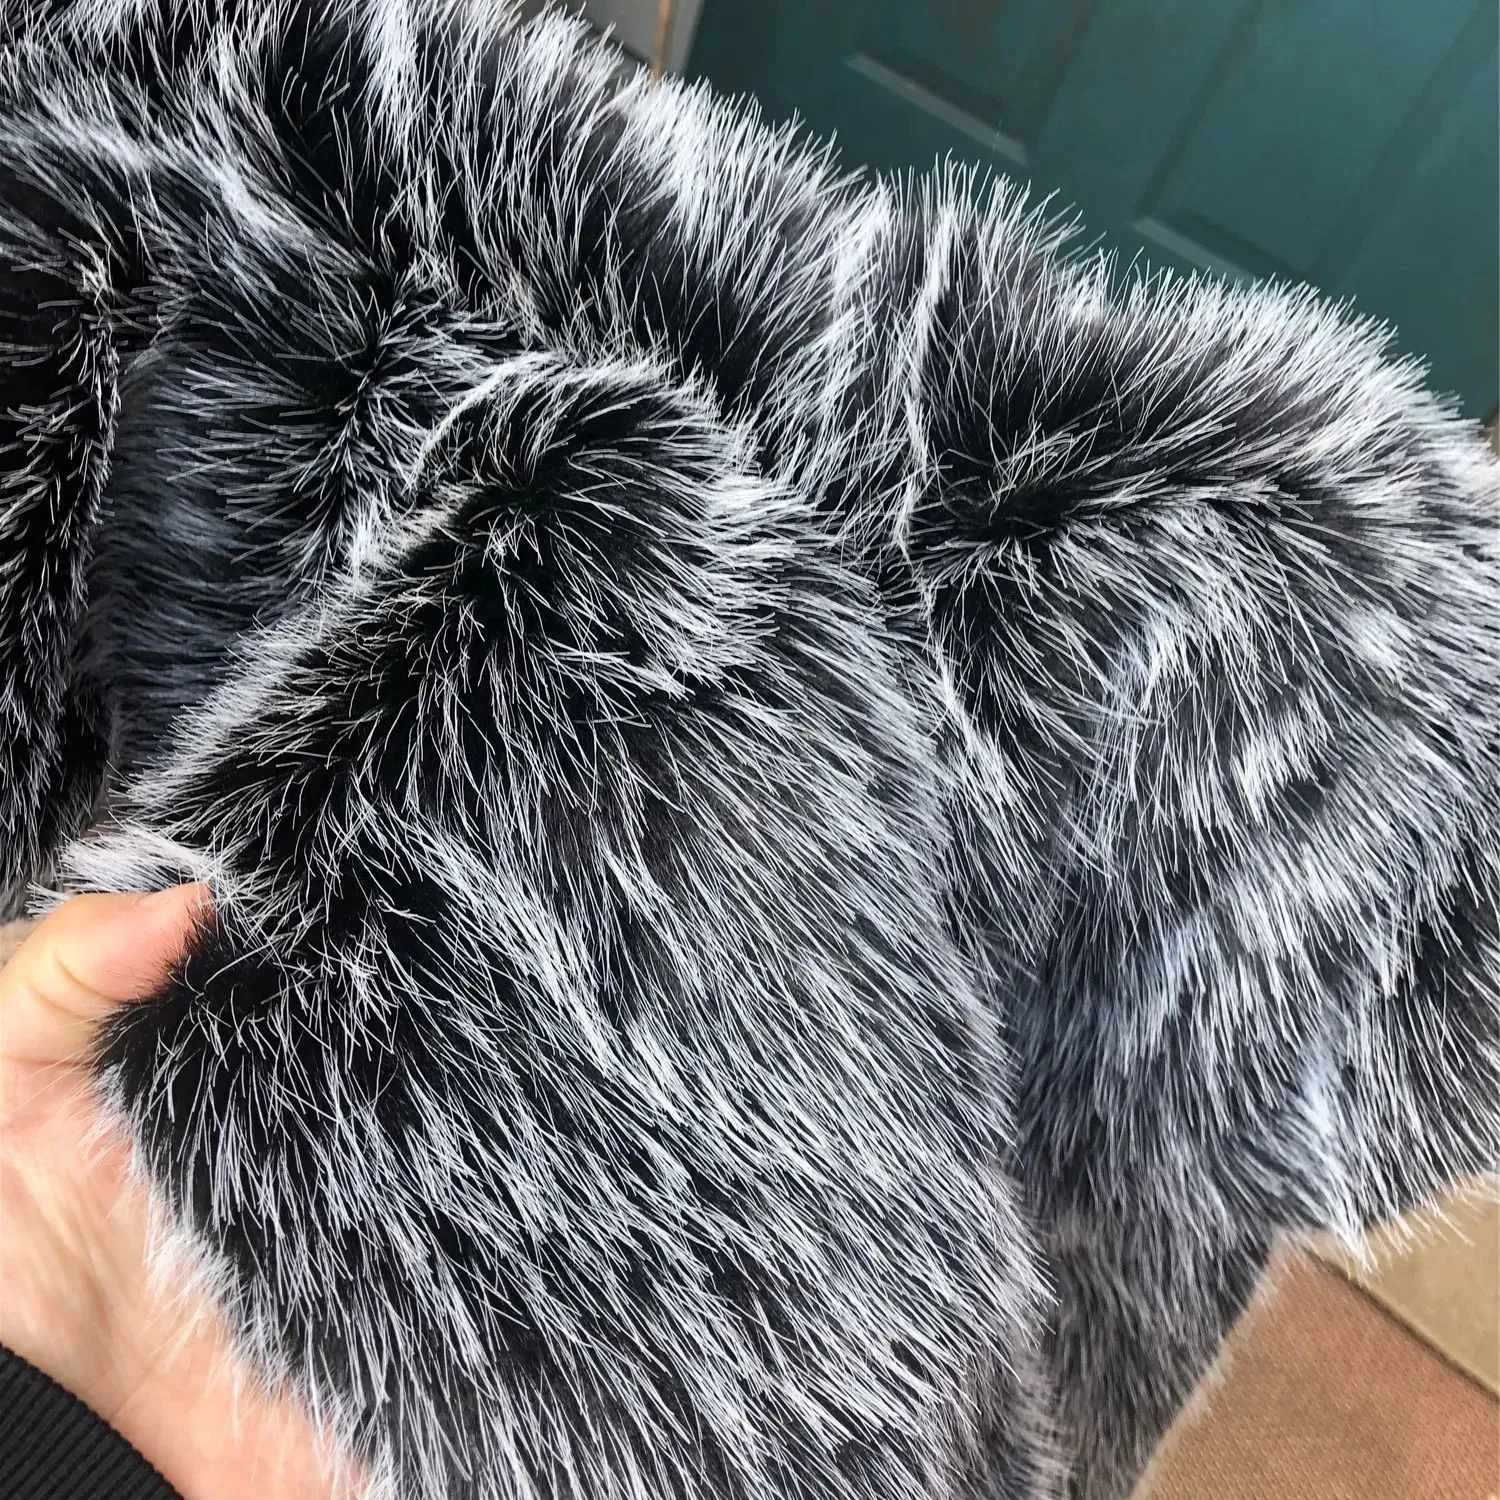 Men`s Fur Faux Fur Luxury Winter Warm Jackets Men Warm Furry Coats Faux Fur Outwear for Men Winter Outwear Jackets Black Fur Coat